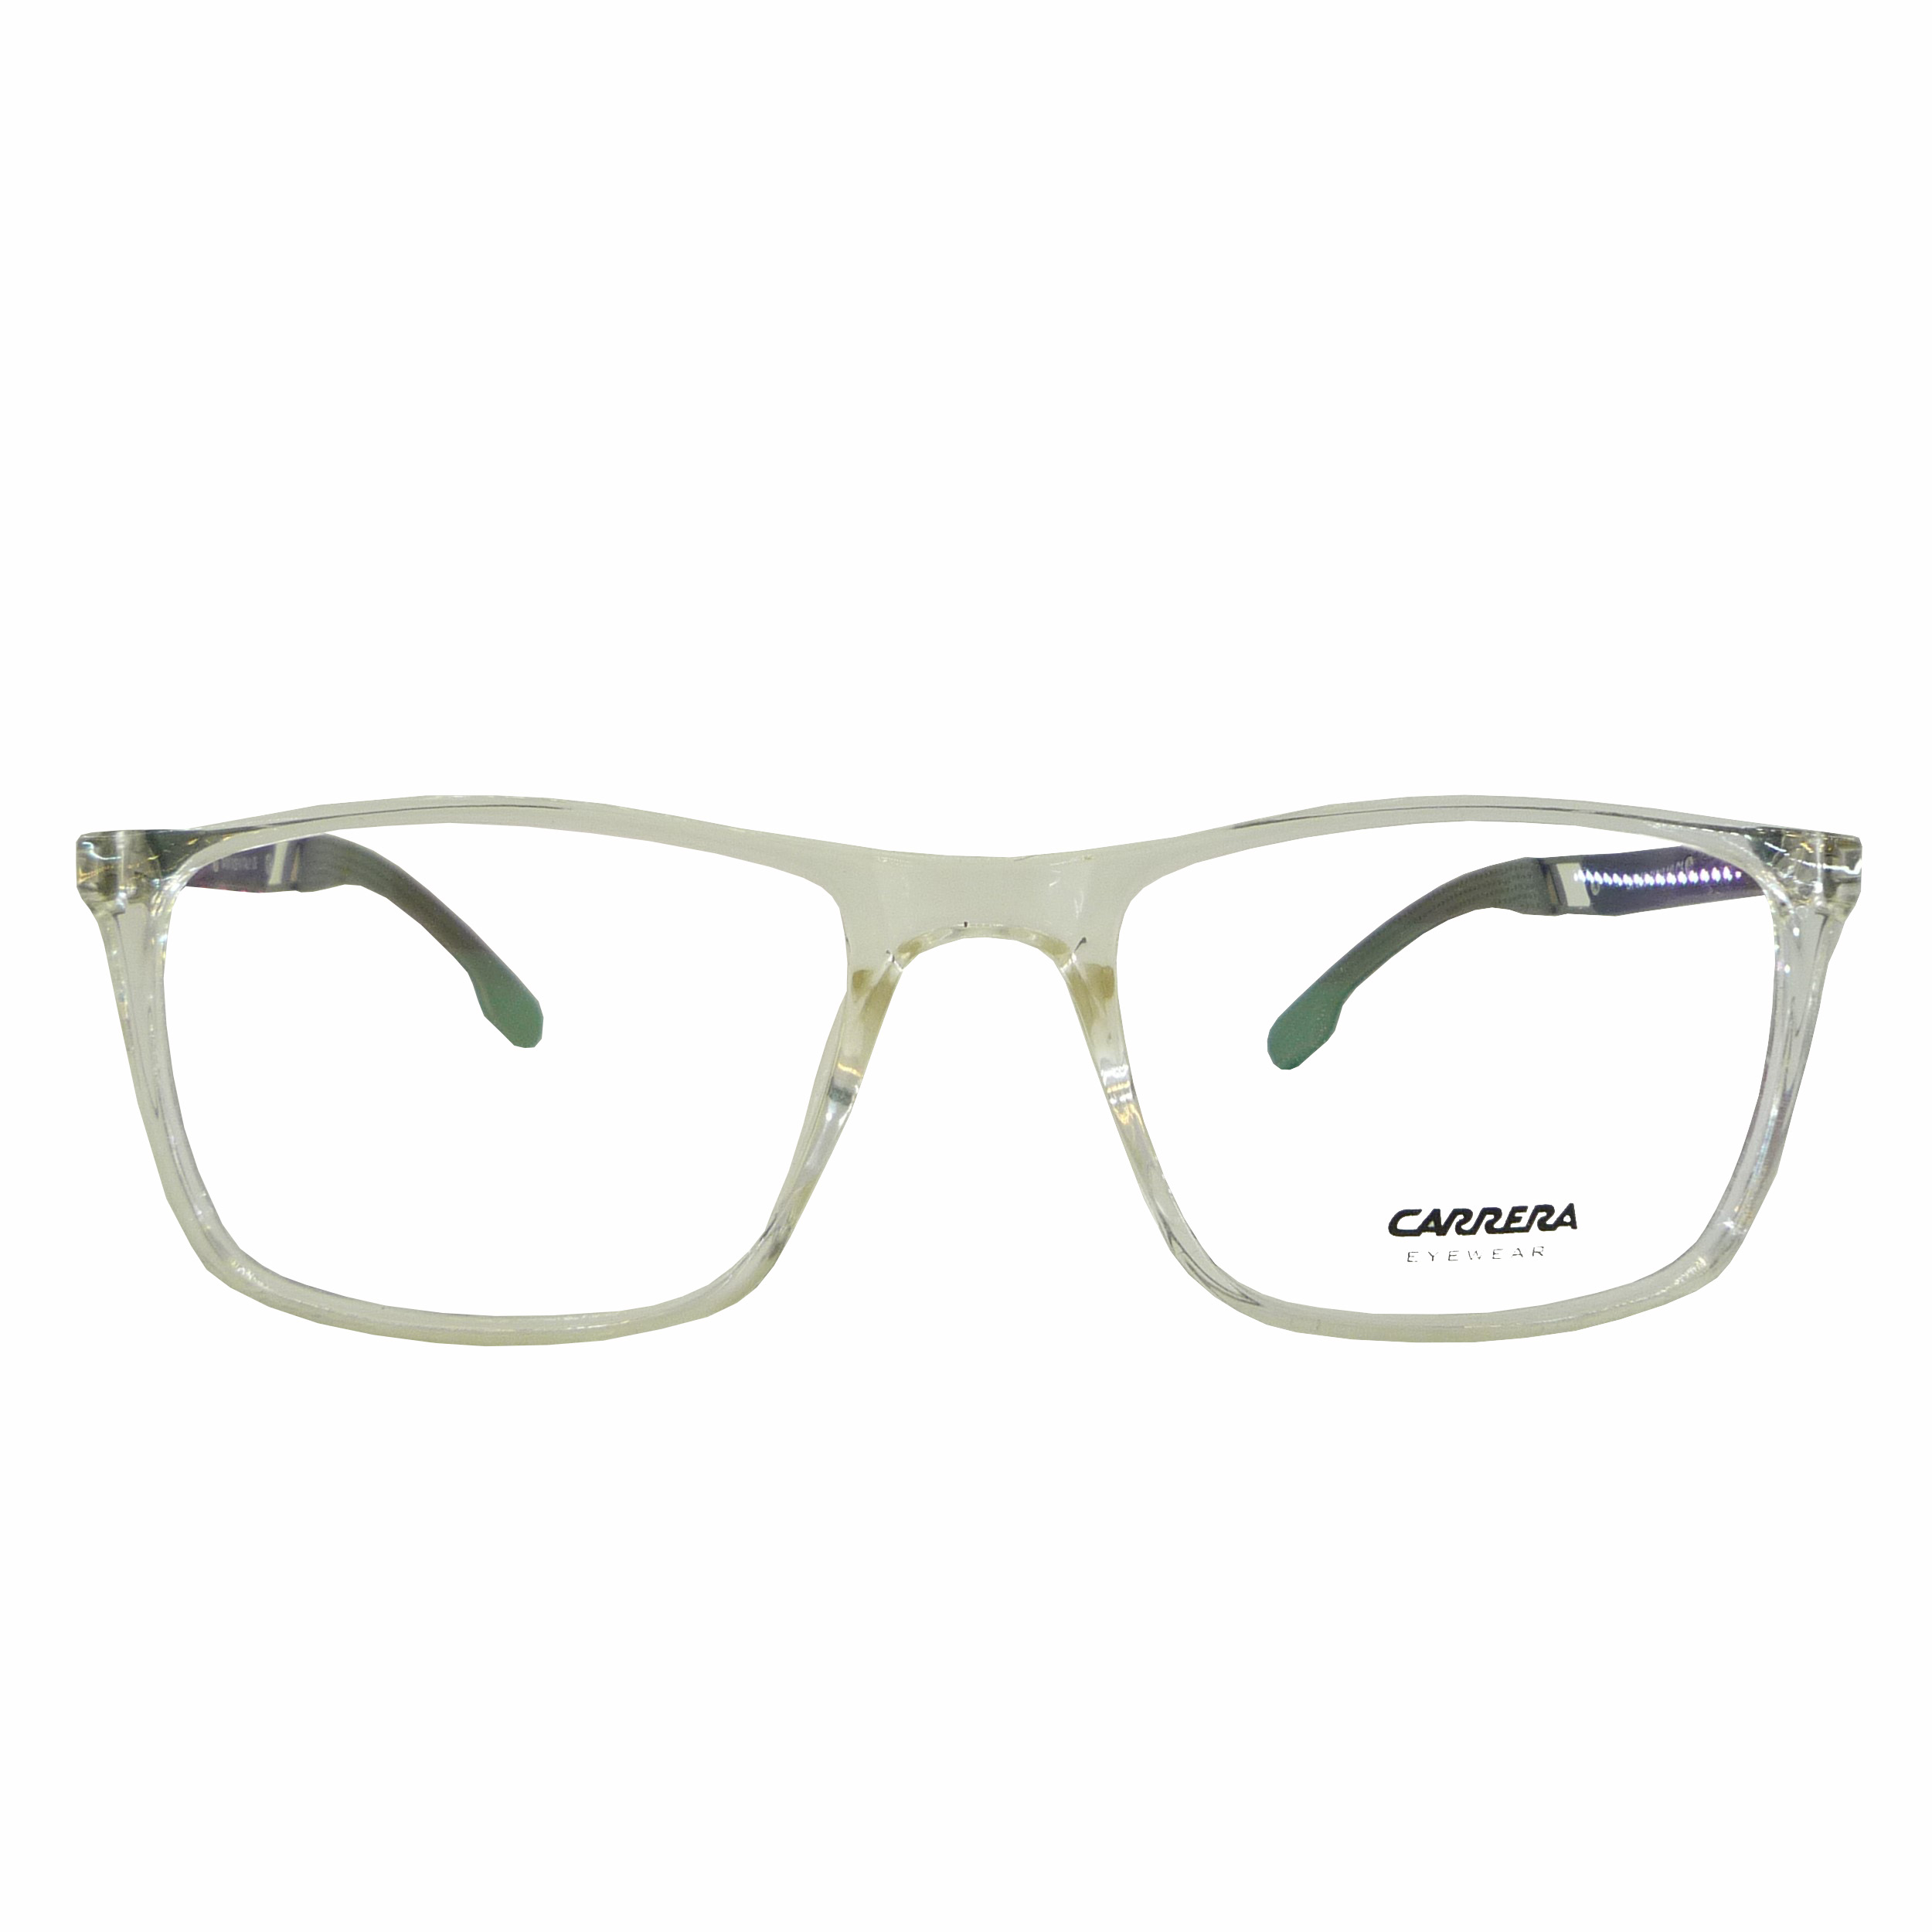 فریم عینک طبی کاررا مدل T2173-DF908C5